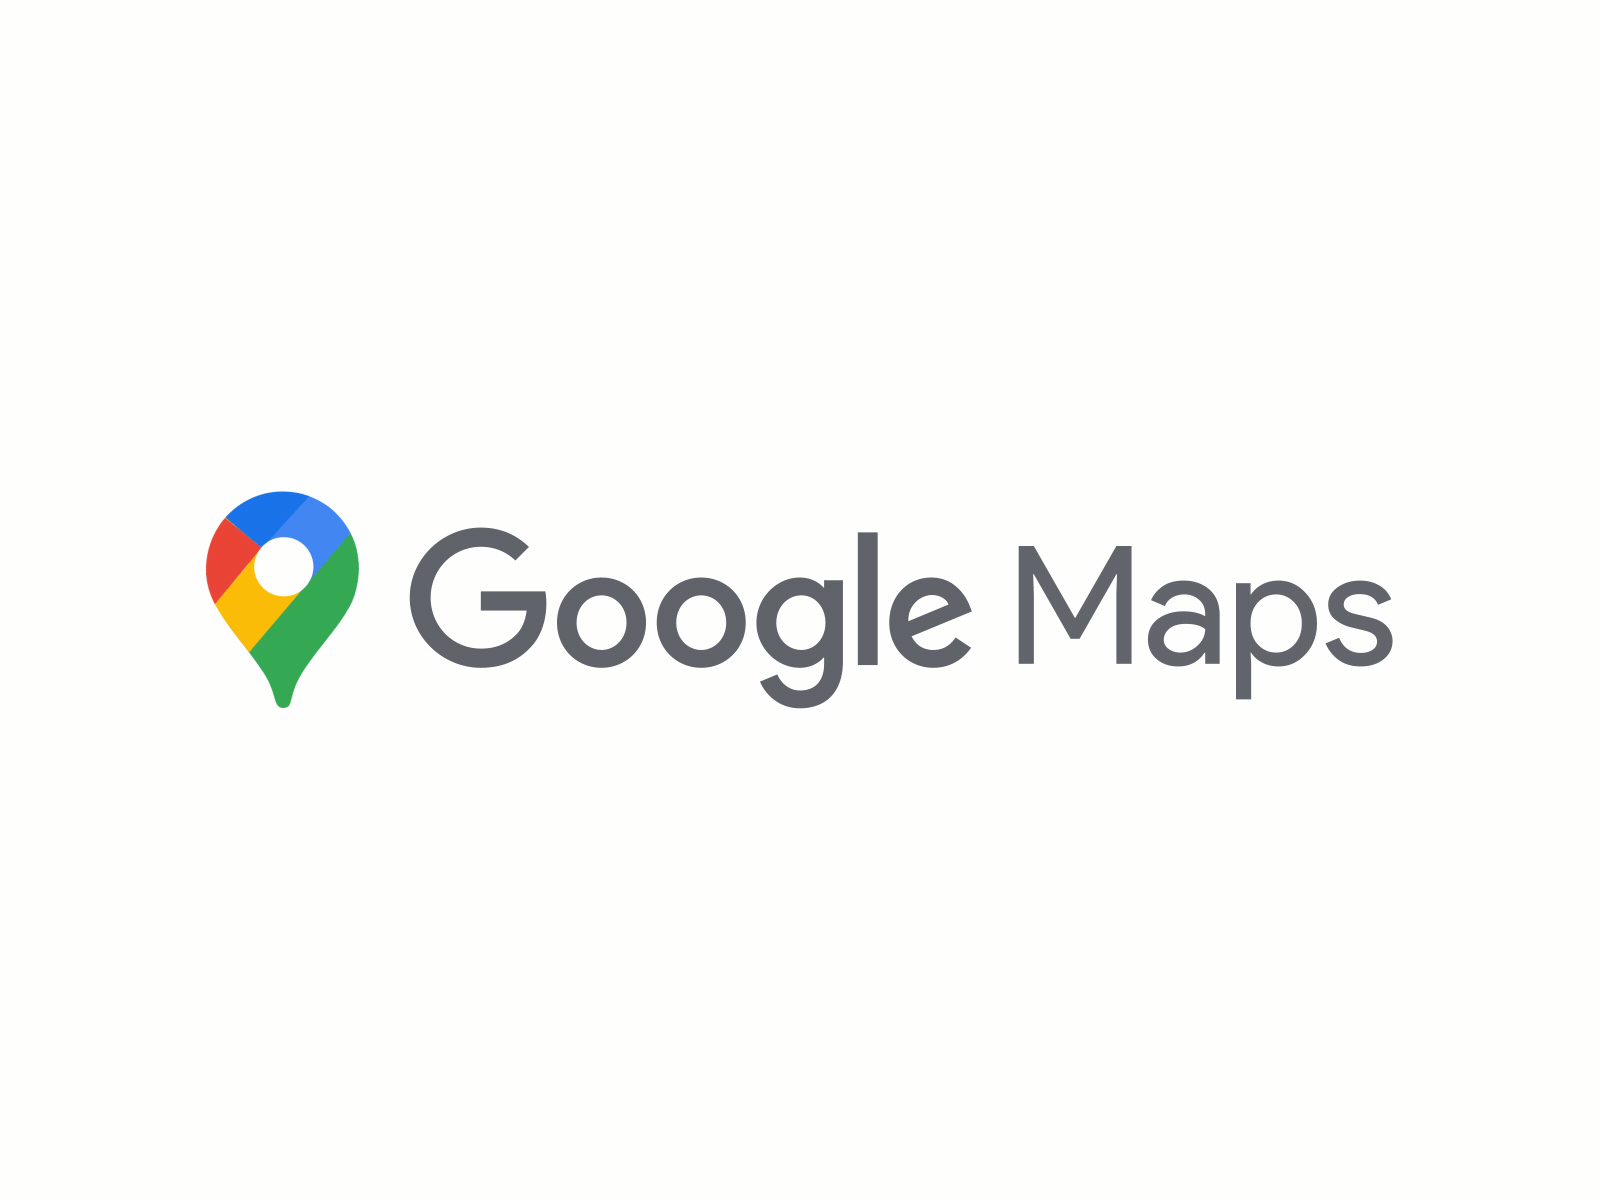 Google Maps - Icon Animation 2d animated logo animation google google maps icon animation logo animation logo icon maps marketing minimal motion